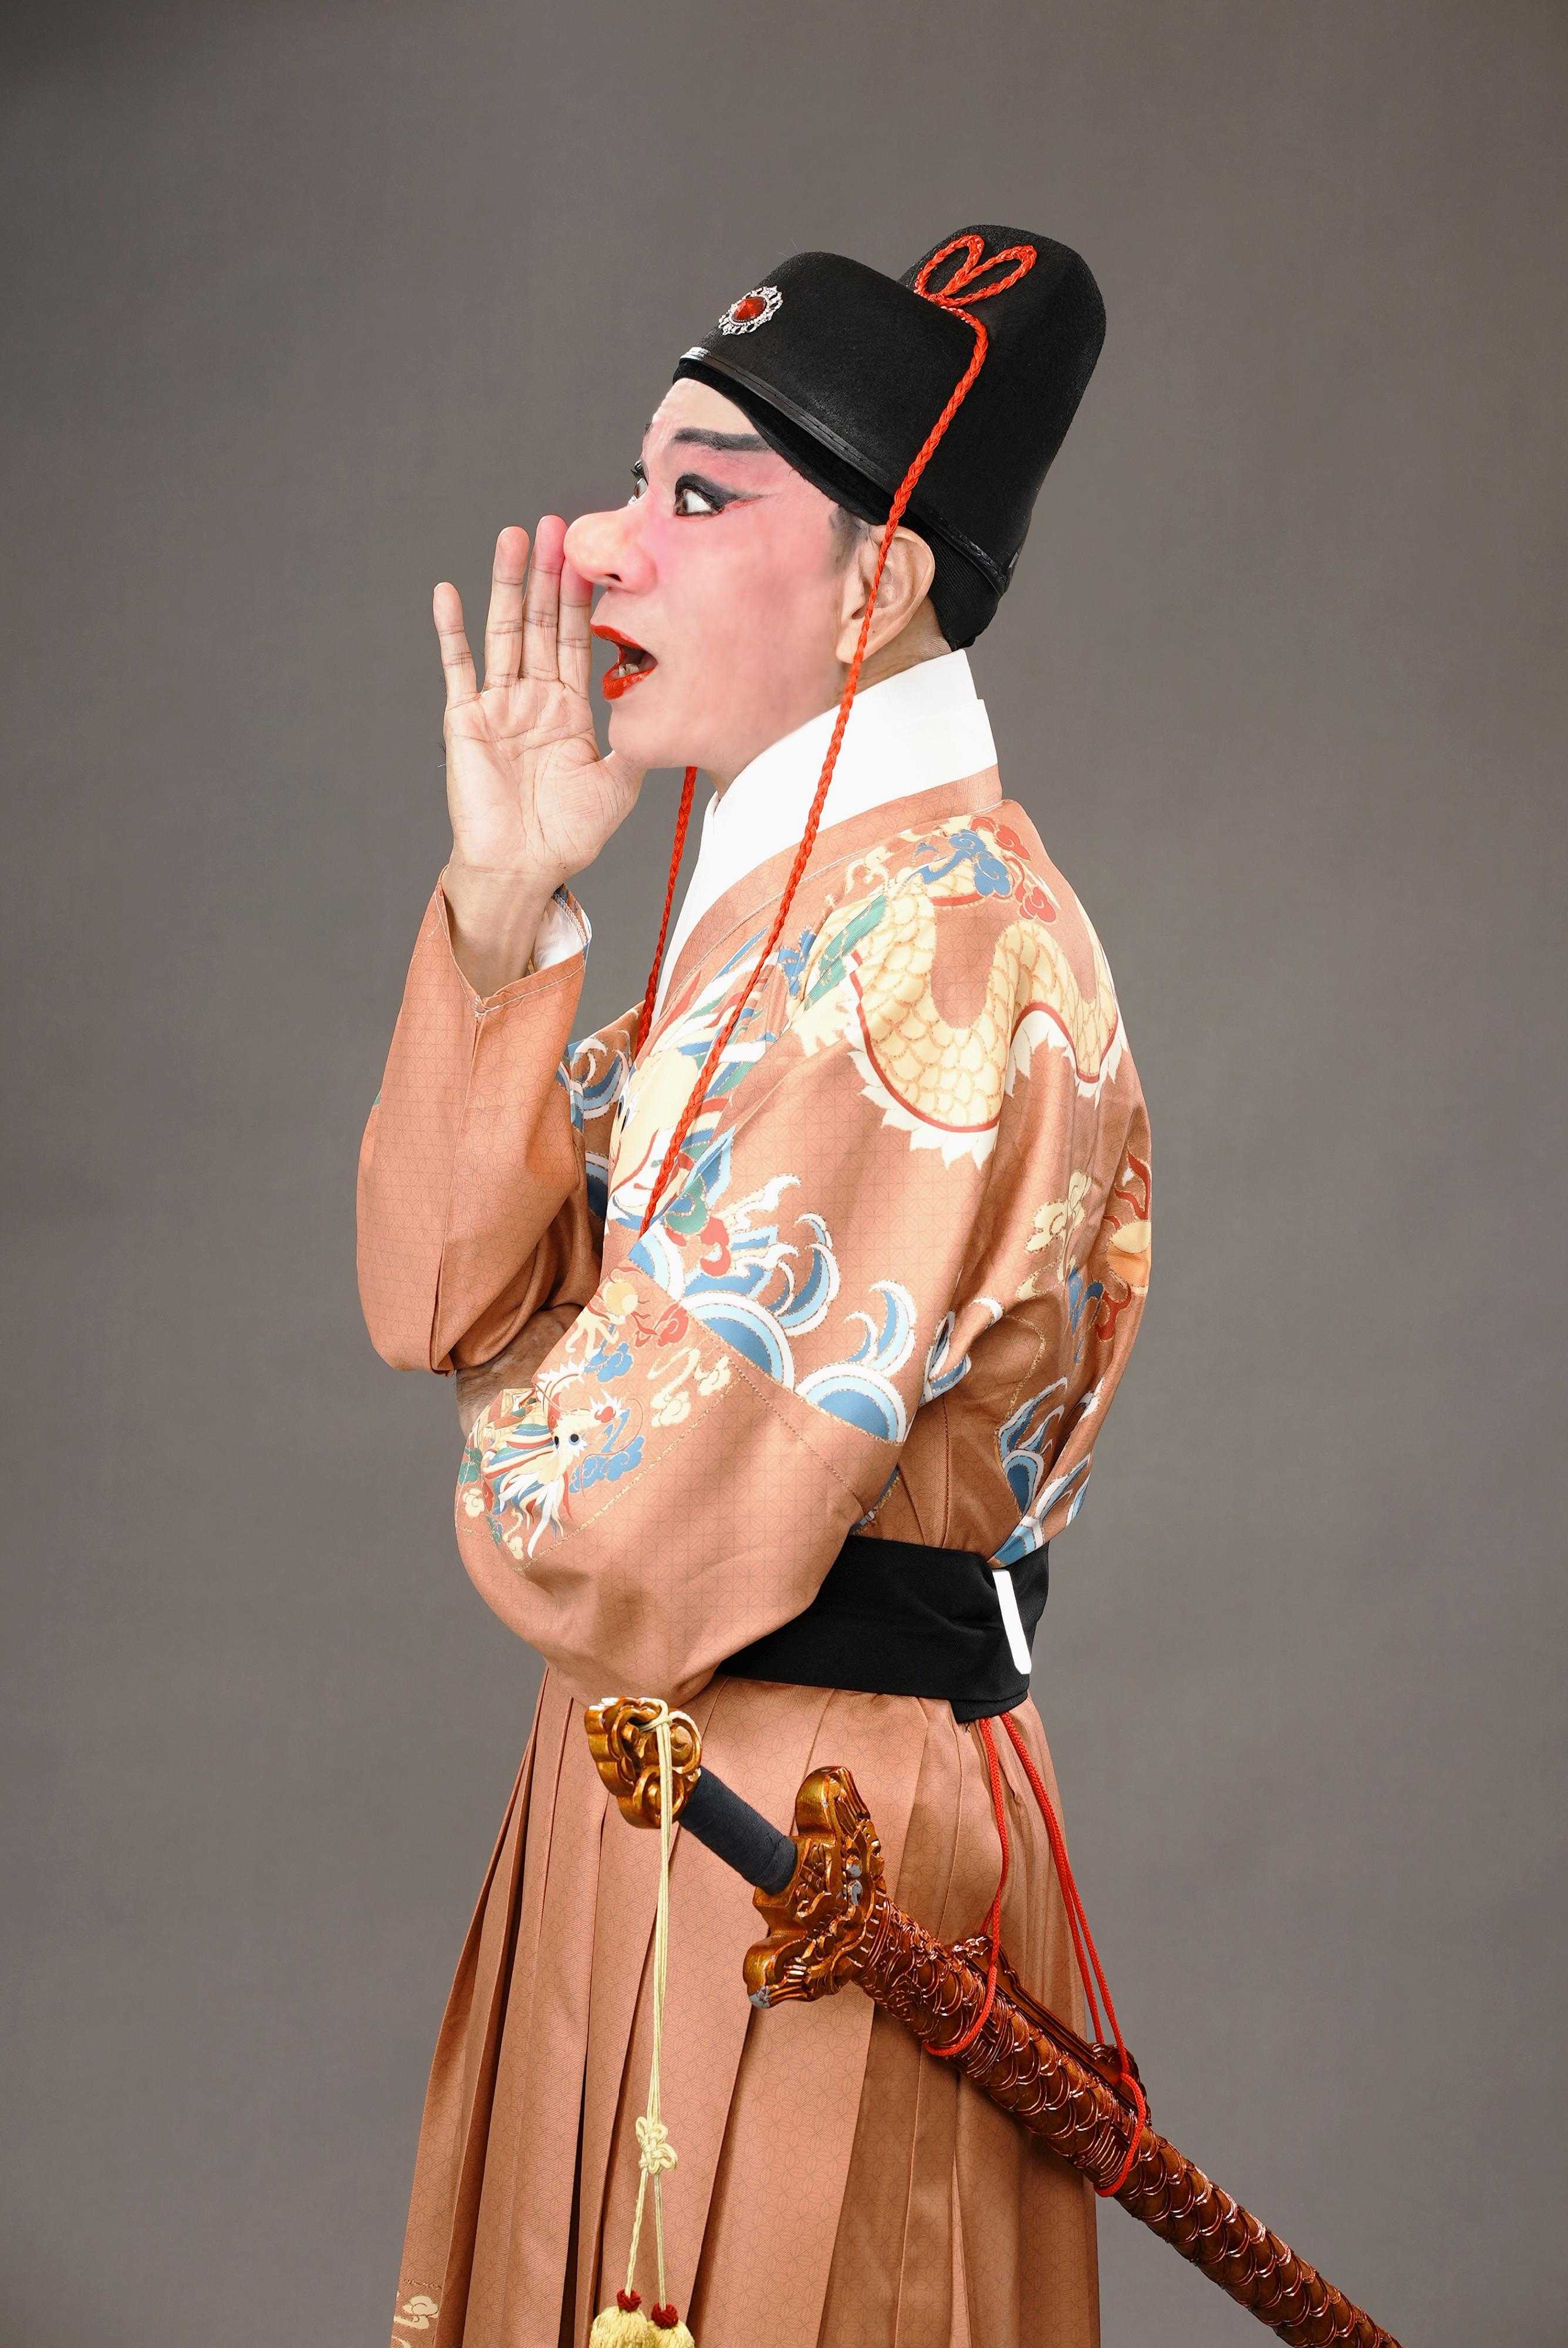 首届「中华文化节」将于六月中旬上演三场新编粤剧《大鼻子情圣》。图示粤剧名伶罗家英。

